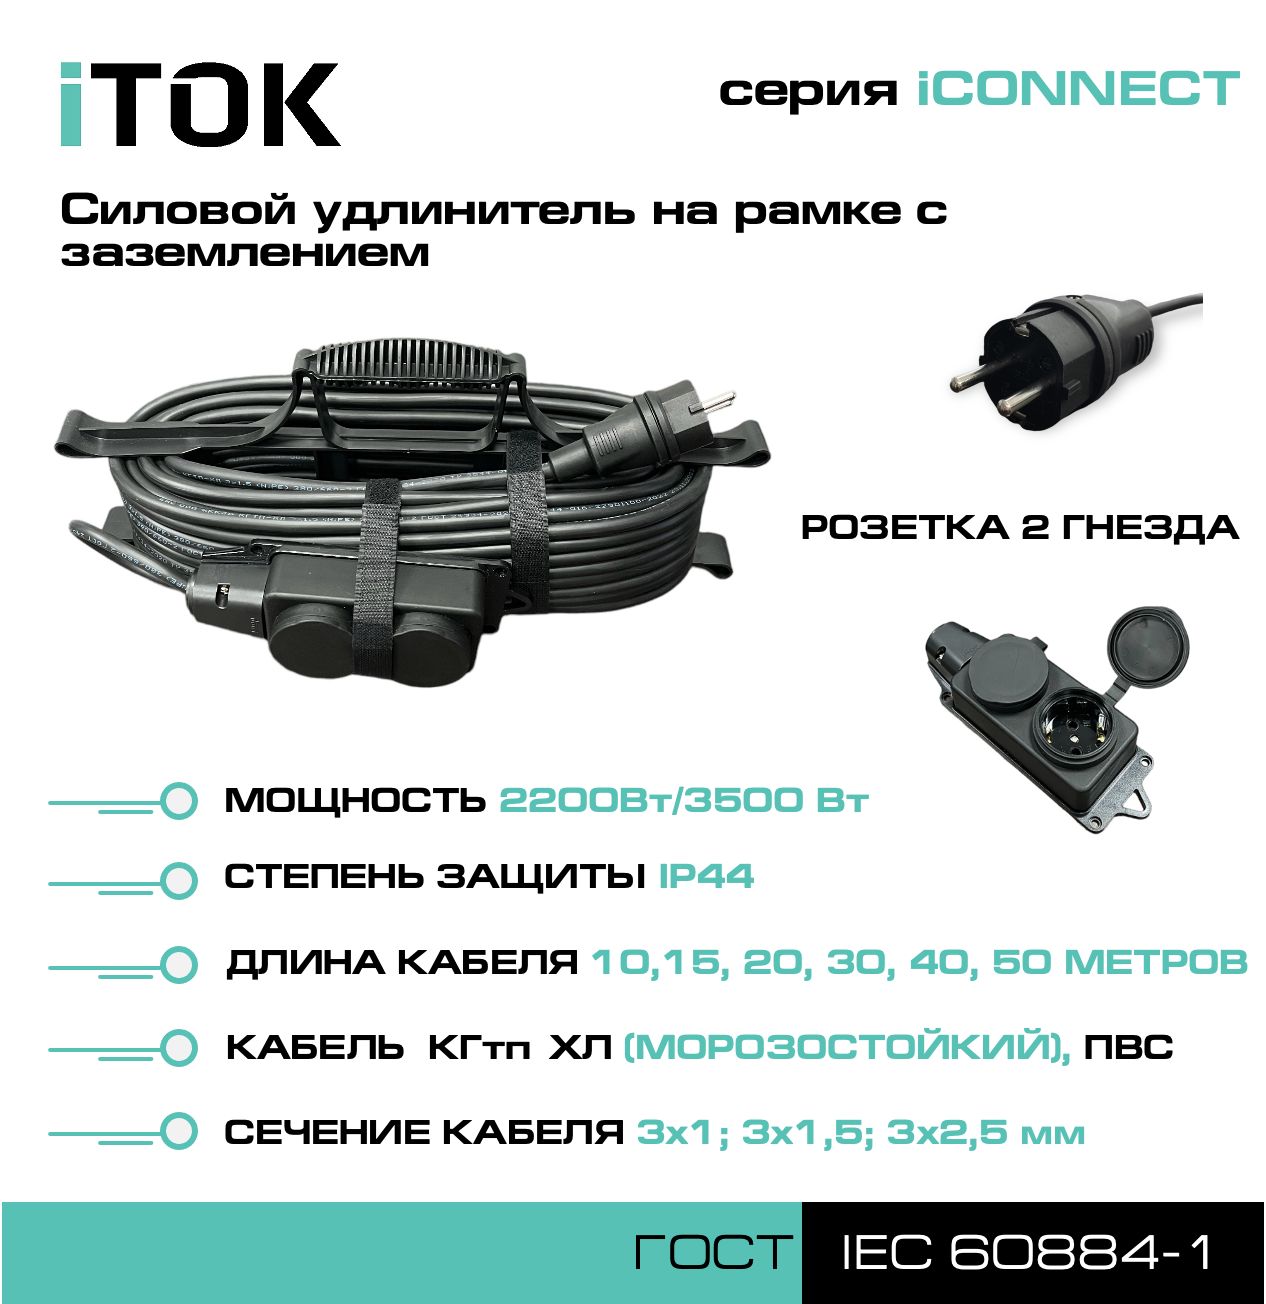 фото Удлинитель на рамке с заземлением серии itok iconnect пвс 3х1,5 мм 2 гнезда ip44 30 м